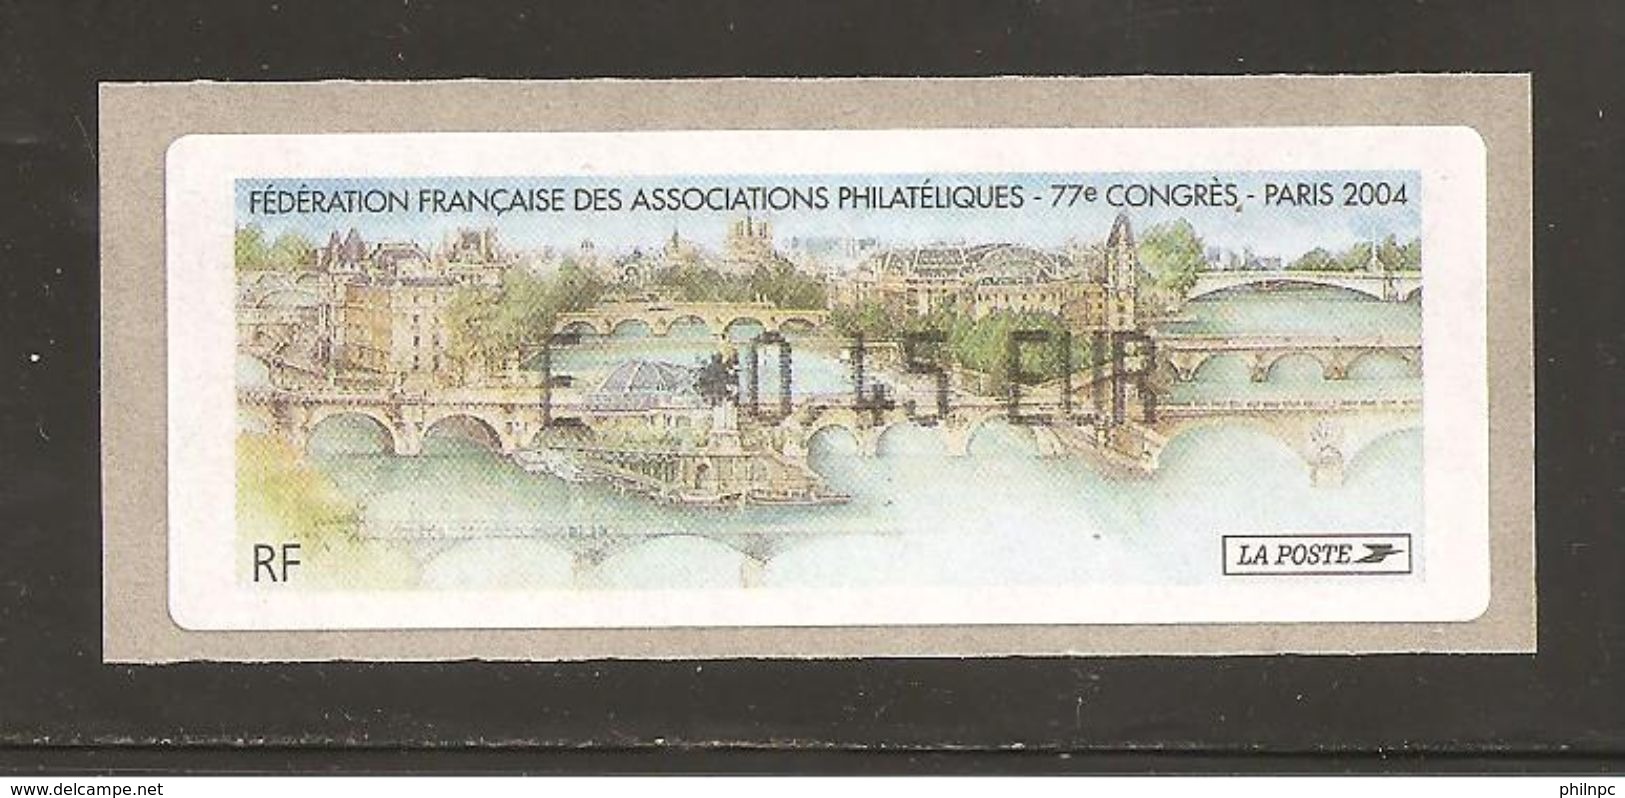 France, Distributeur, 573, Paris, Congrès FFAP, 2004, Type Z, Neuf **, LISA - 1999-2009 Vignettes Illustrées